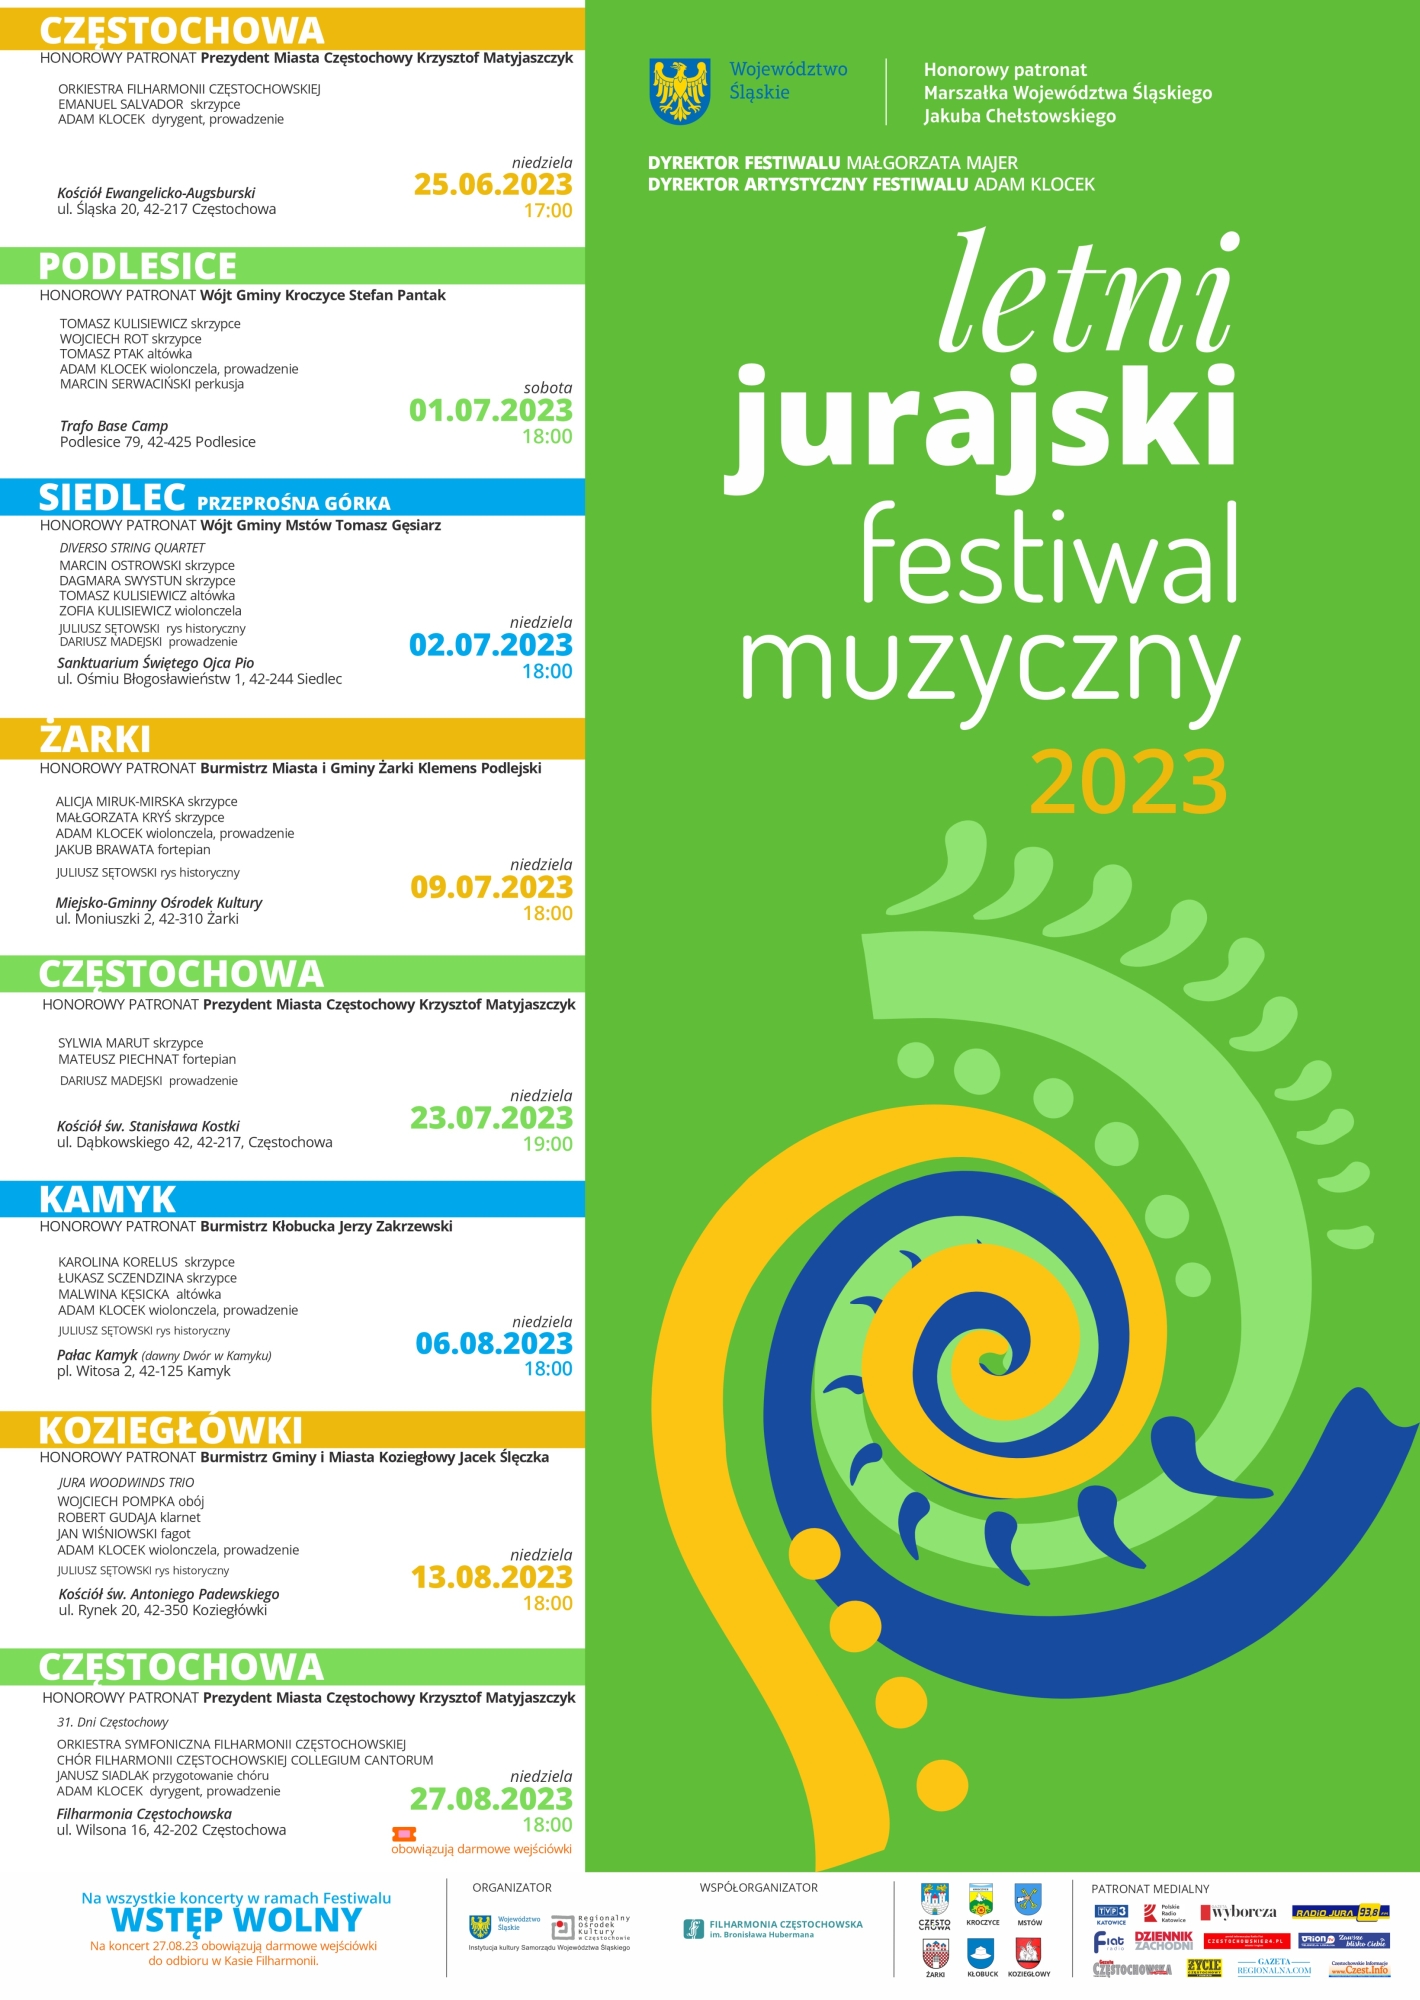 Letni Jurajski Festiwal Muzyczny